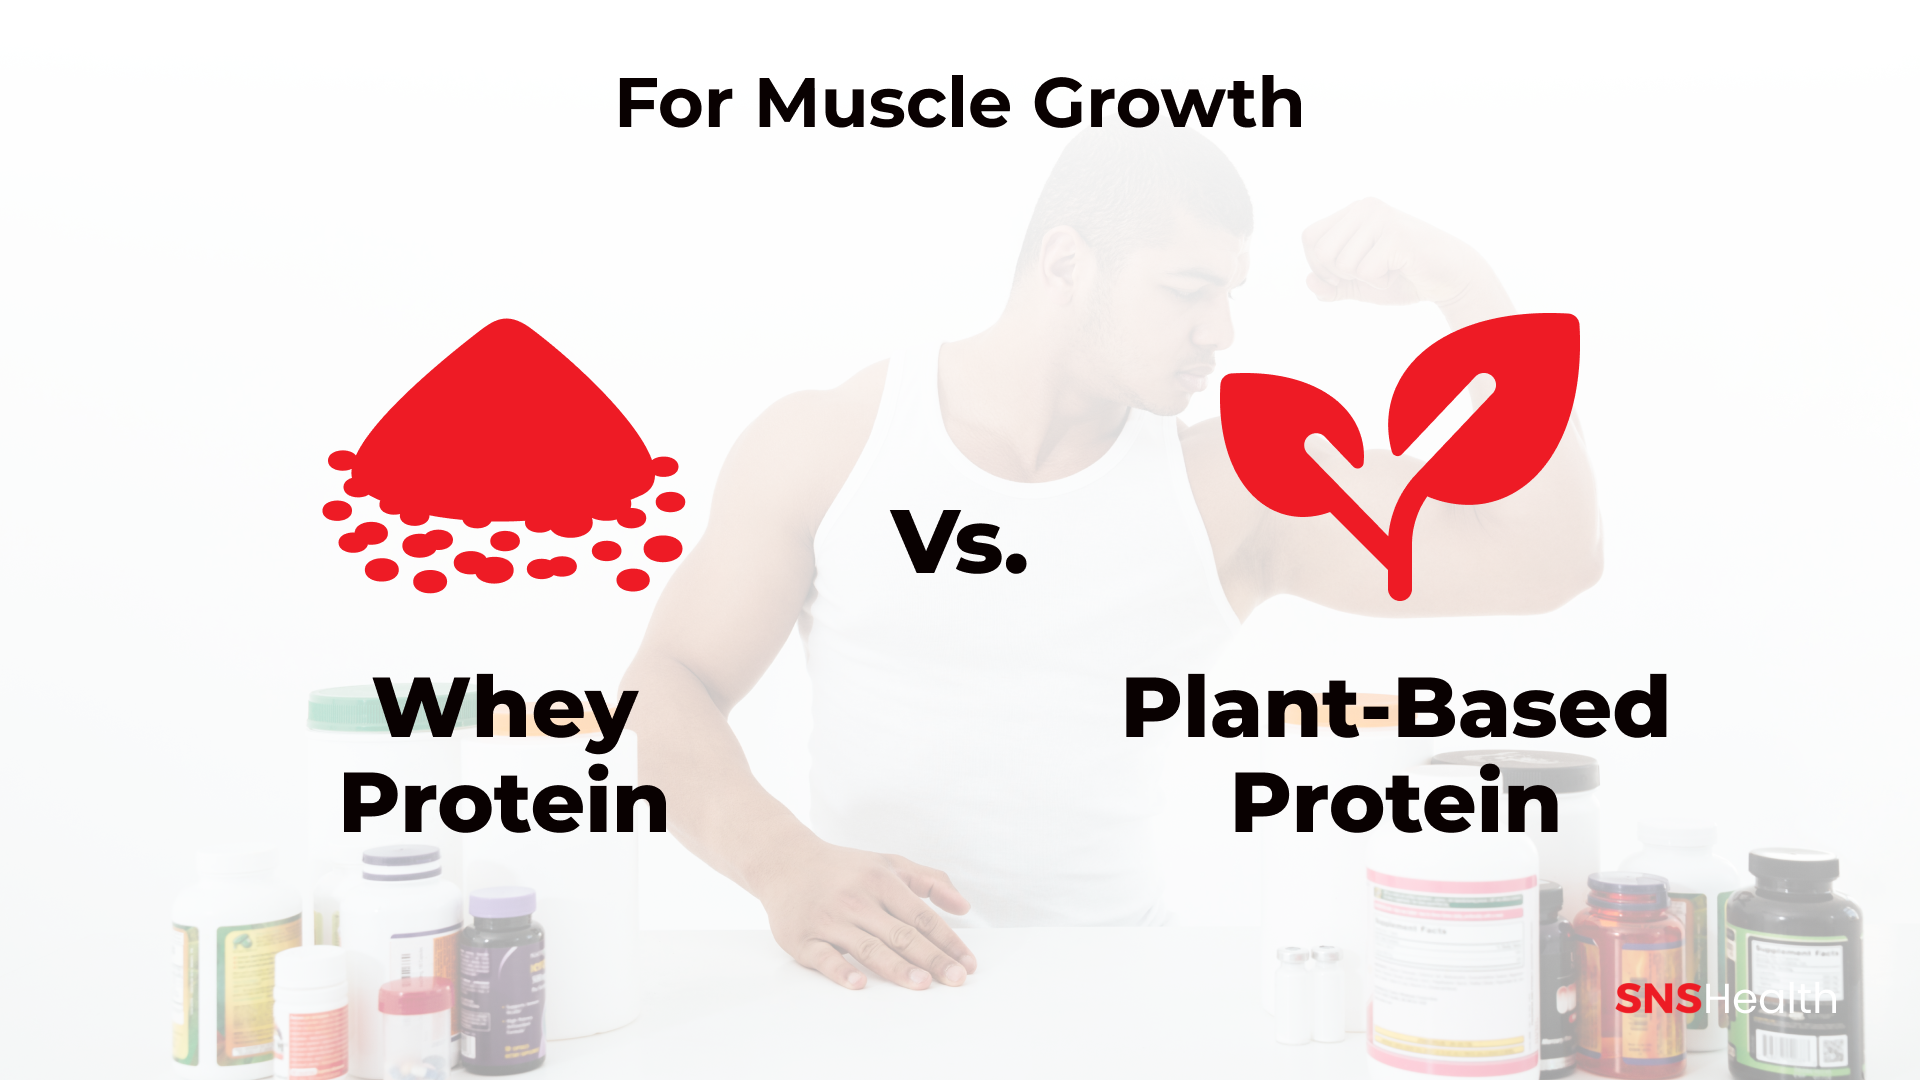 Whey Protein vs Protéines végétales – pour la croissance musculaire